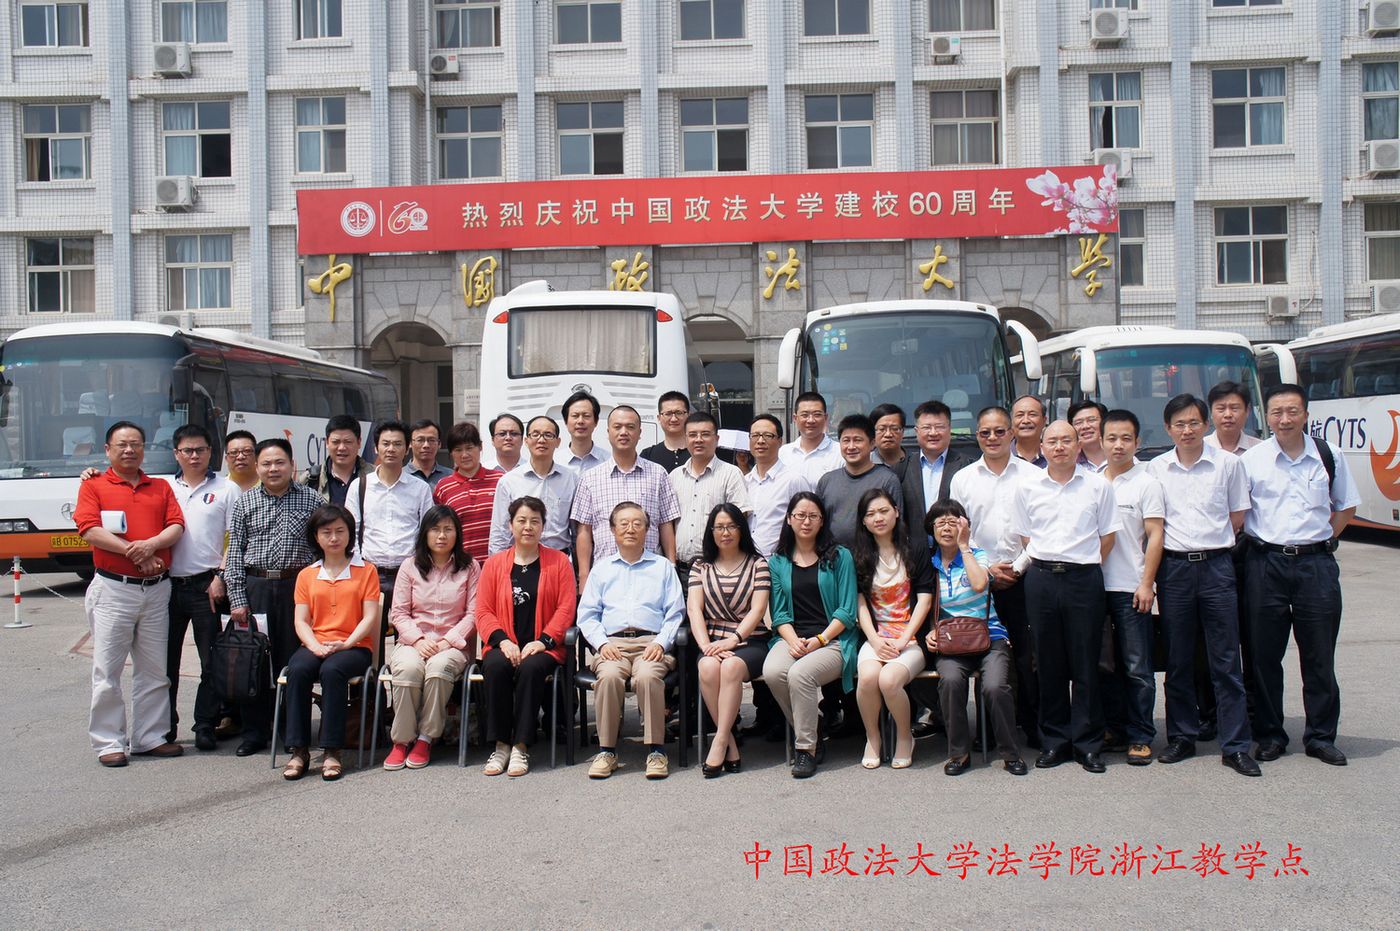 中国政法大学在职法学博士浙江班学员和张晋藩教授合影